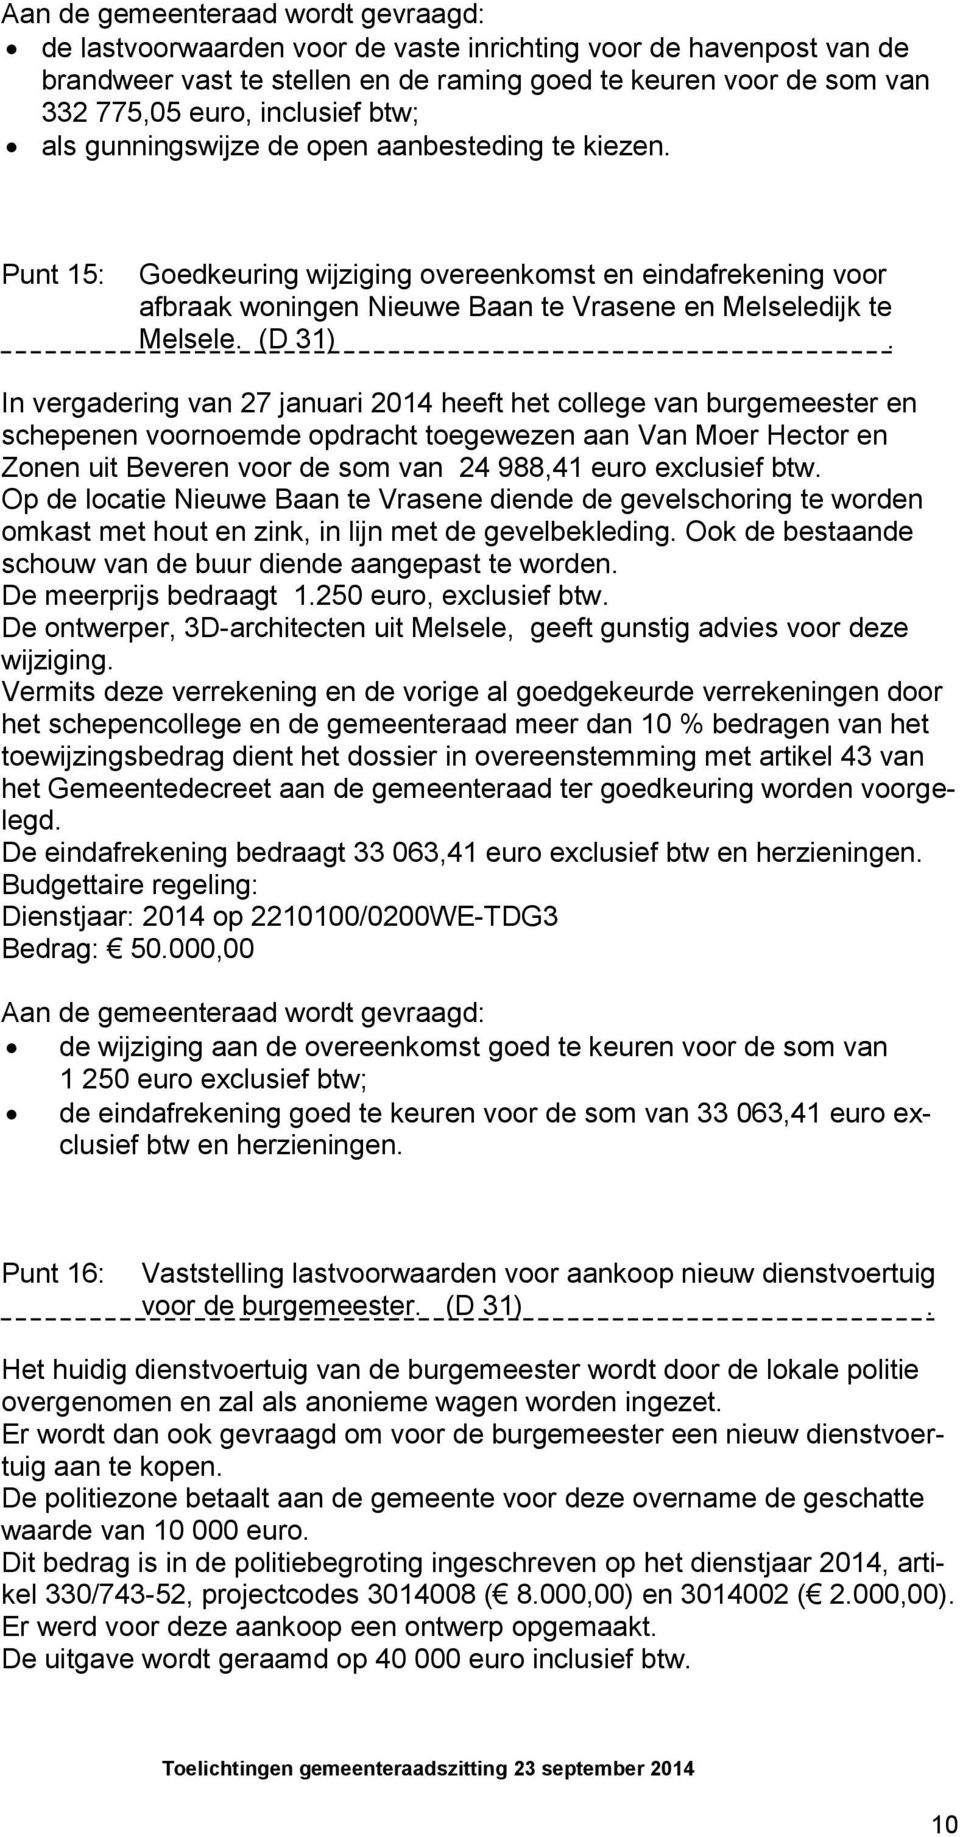 In vergadering van 27 januari 2014 heeft het college van burgemeester en schepenen voornoemde opdracht toegewezen aan Van Moer Hector en Zonen uit Beveren voor de som van 24 988,41 euro exclusief btw.